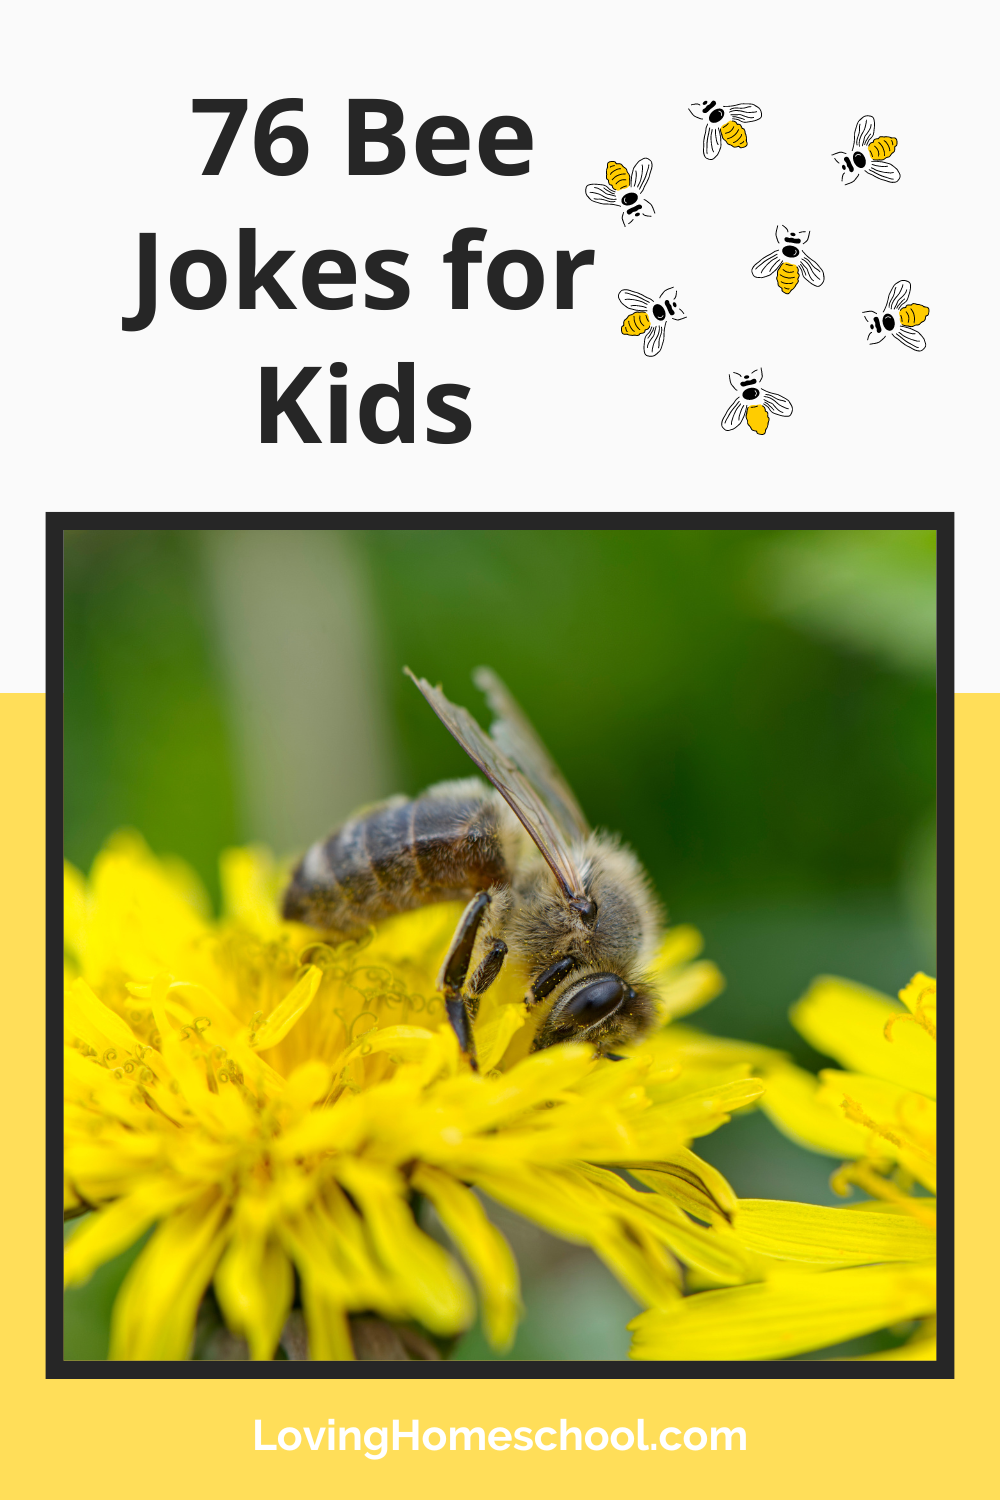 76 Bee Jokes for Kids Pinterest Pin